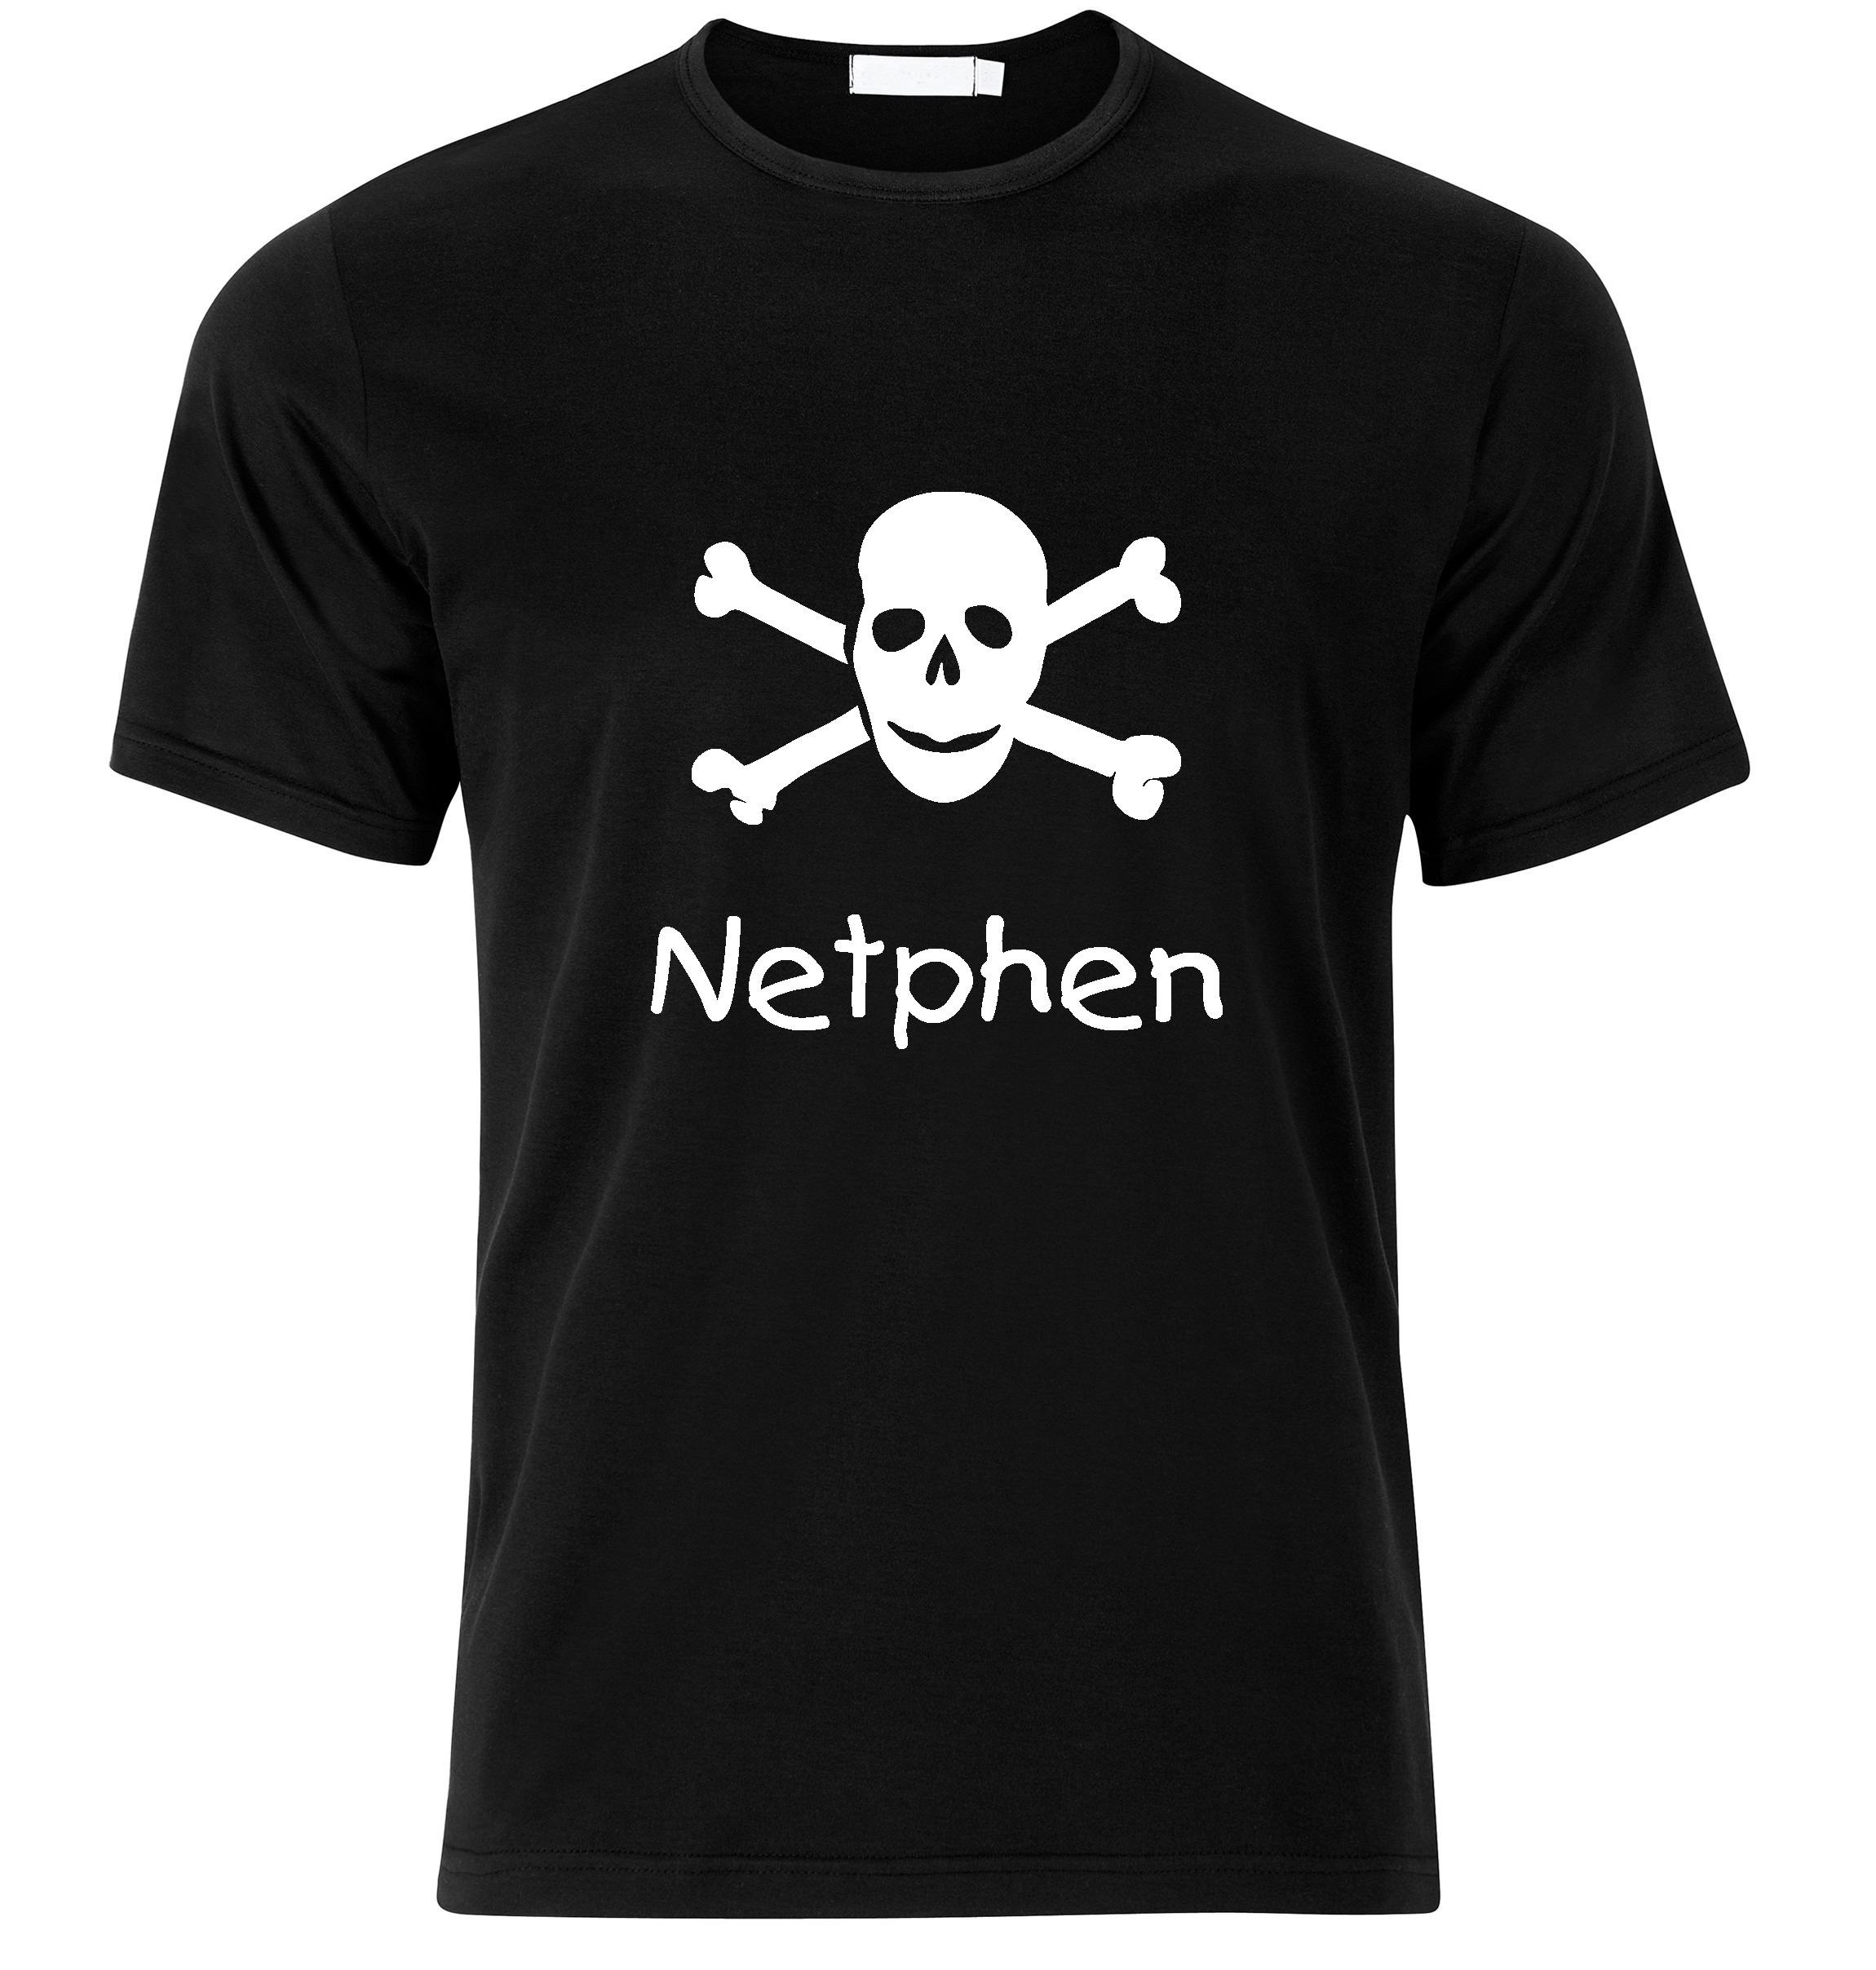 T-Shirt Netphen Jolly Roger, Totenkopf